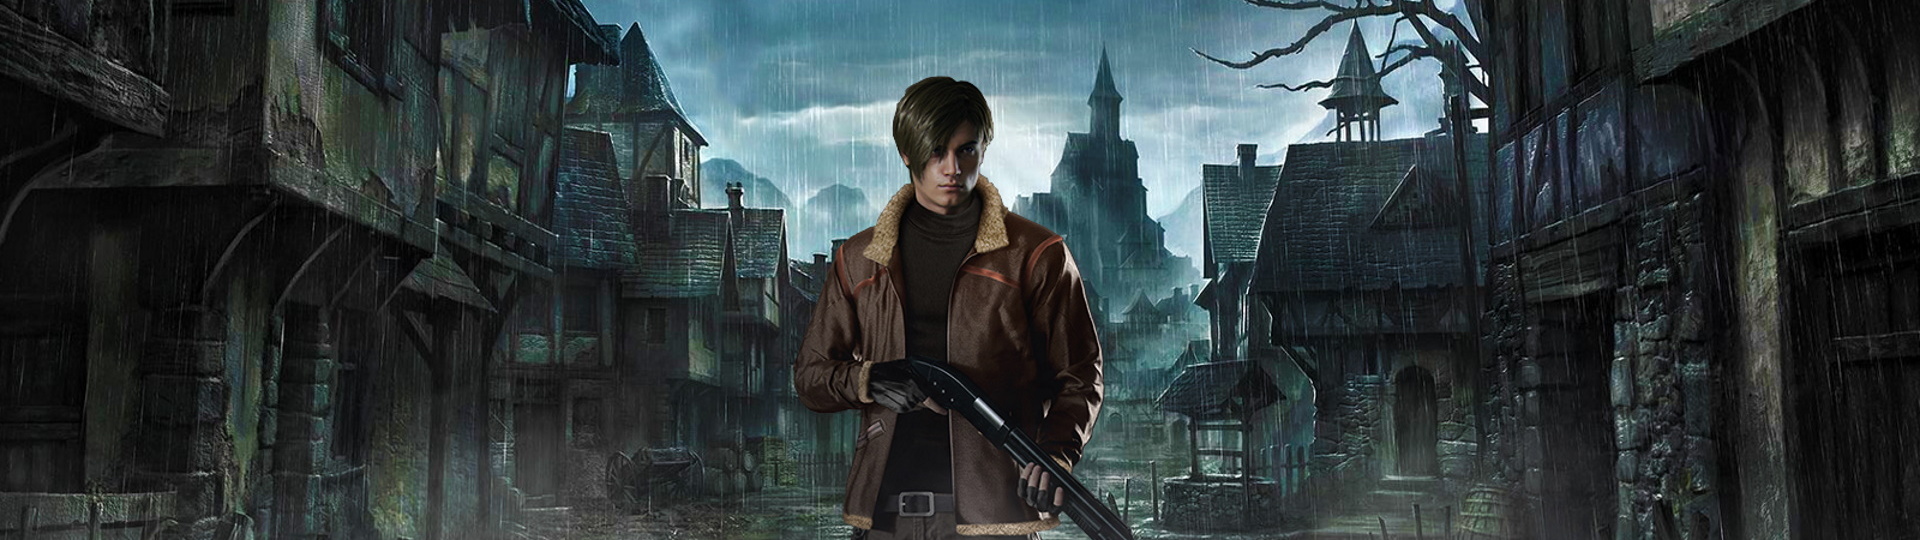 Resident Evil 4 Remake dorazí nejspíš až v roce 2023 | Spekulace